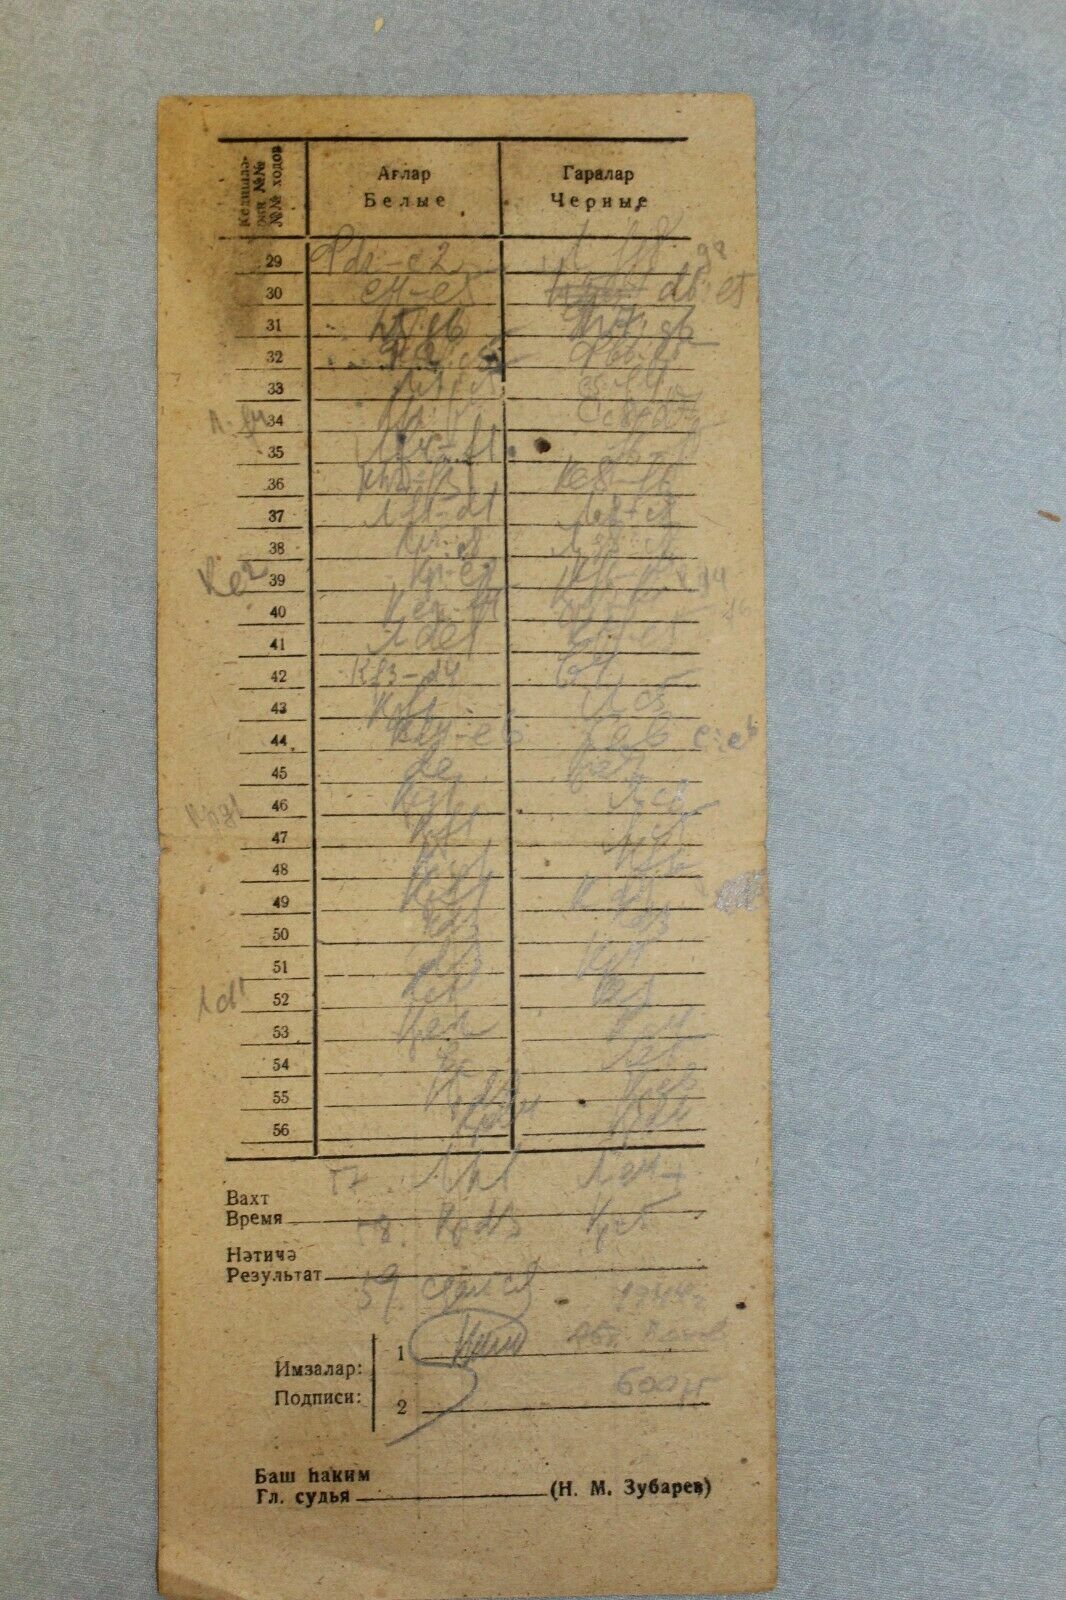 11803.Soviet Chess Score Sheet: Panov - Makogonov 1944